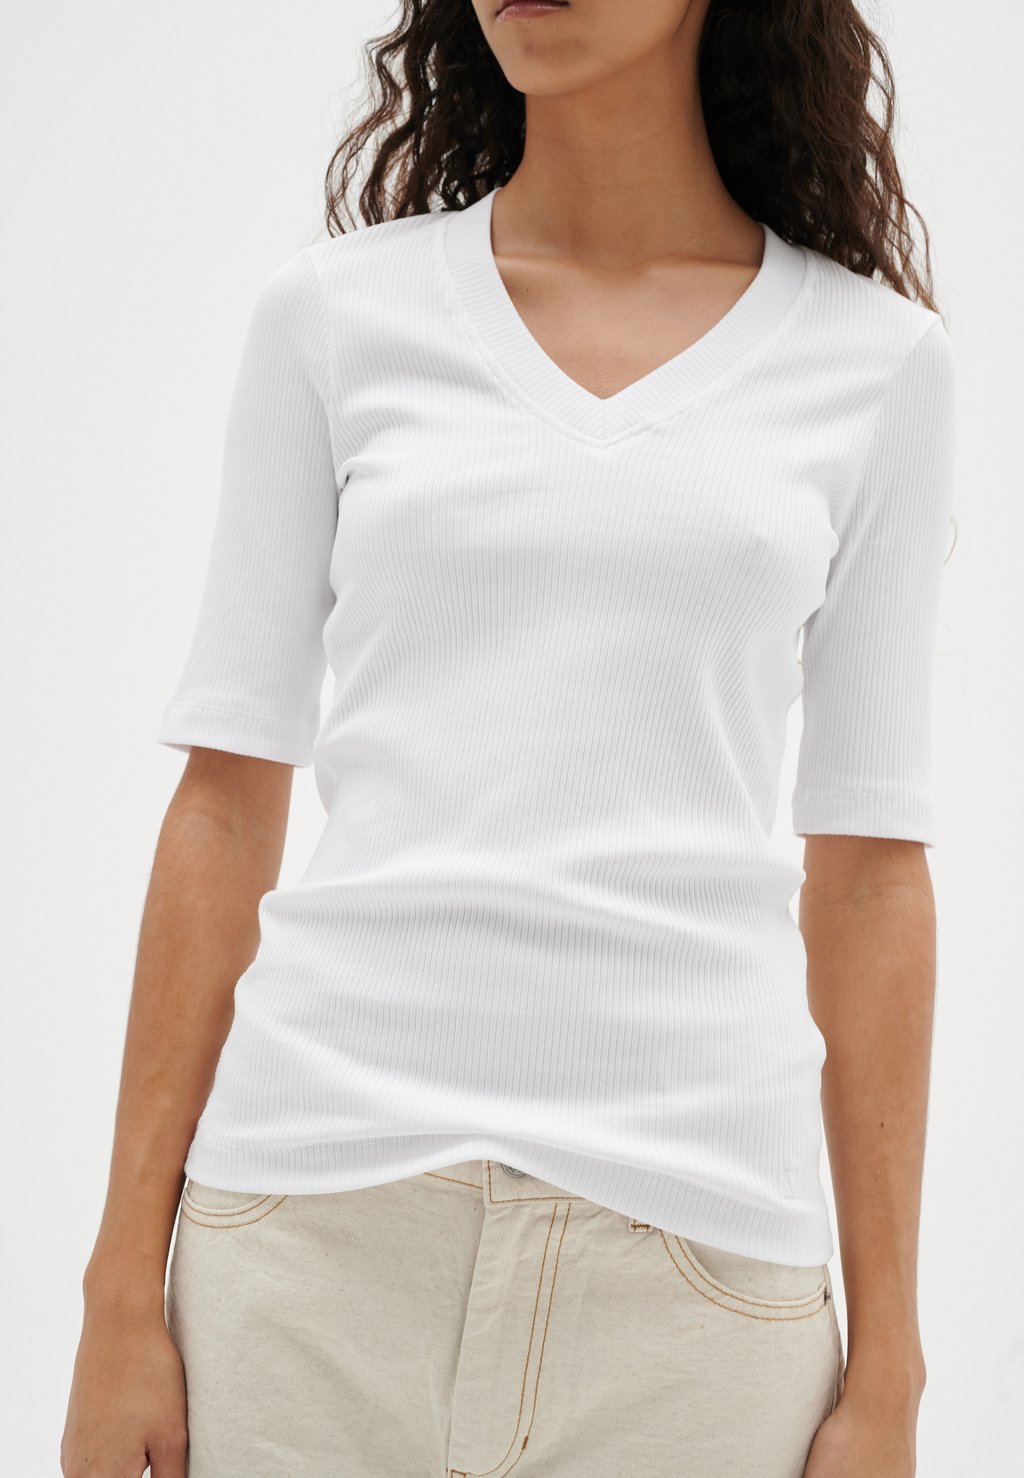 Базовая футболка InWear, белый футболка базовая rena v inwear цвет white